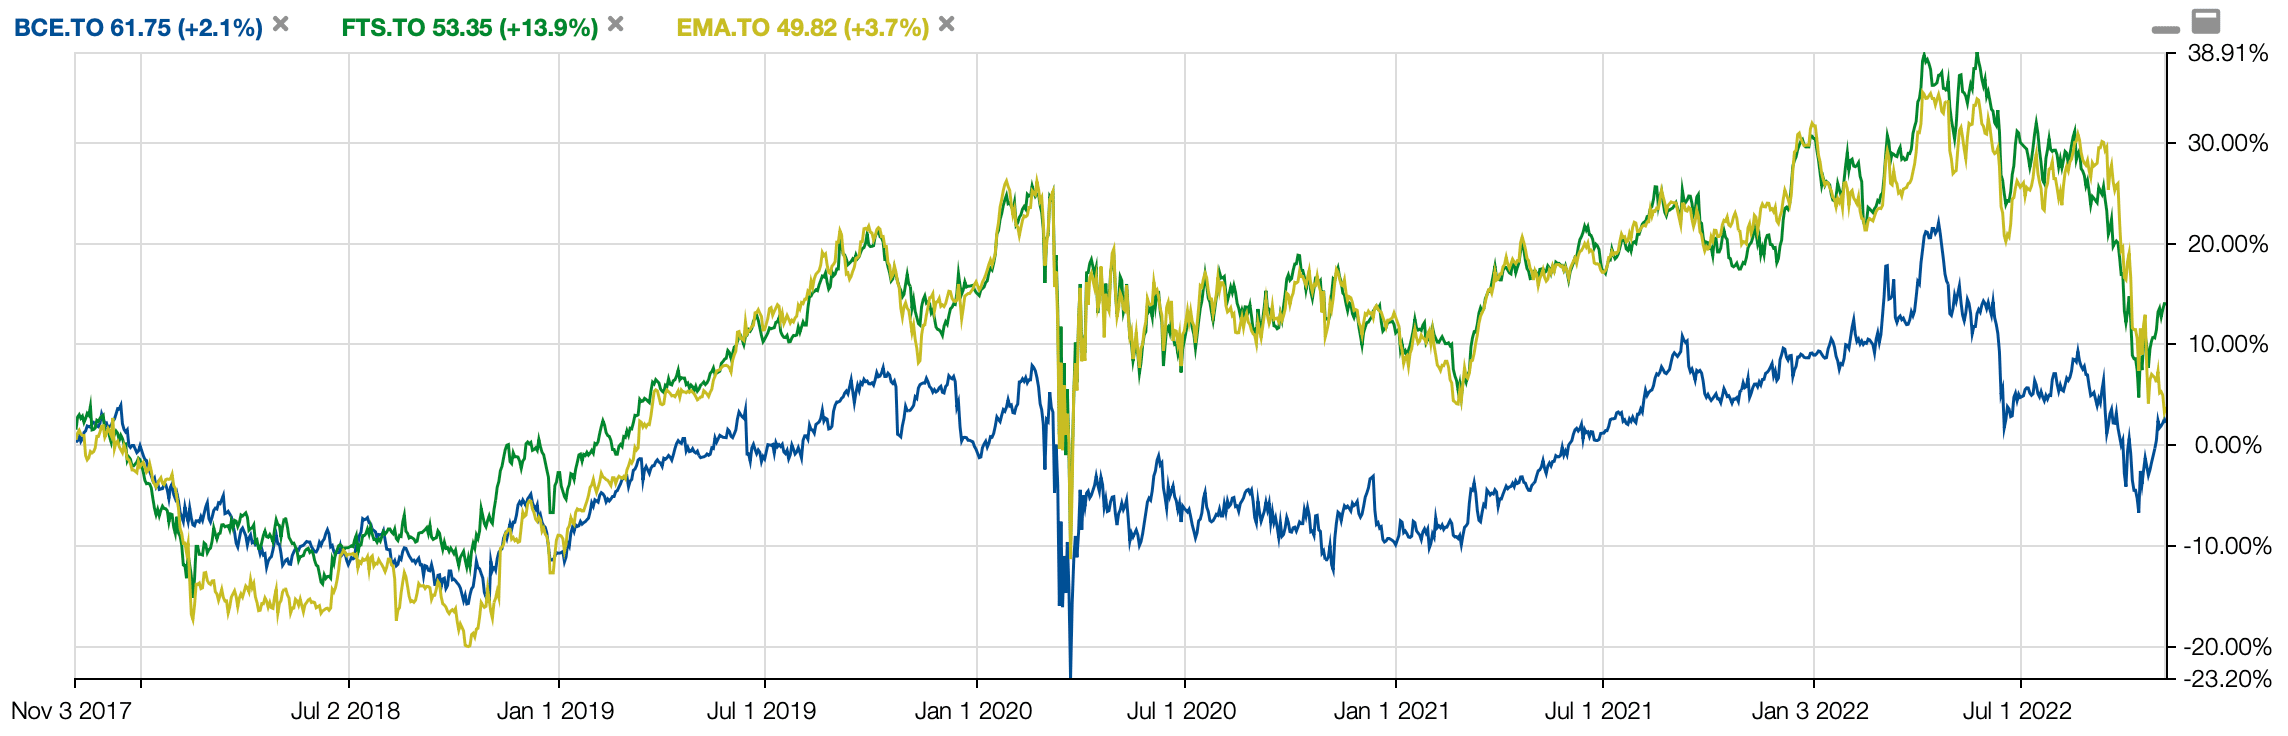 BCE vs EMA vs FTS